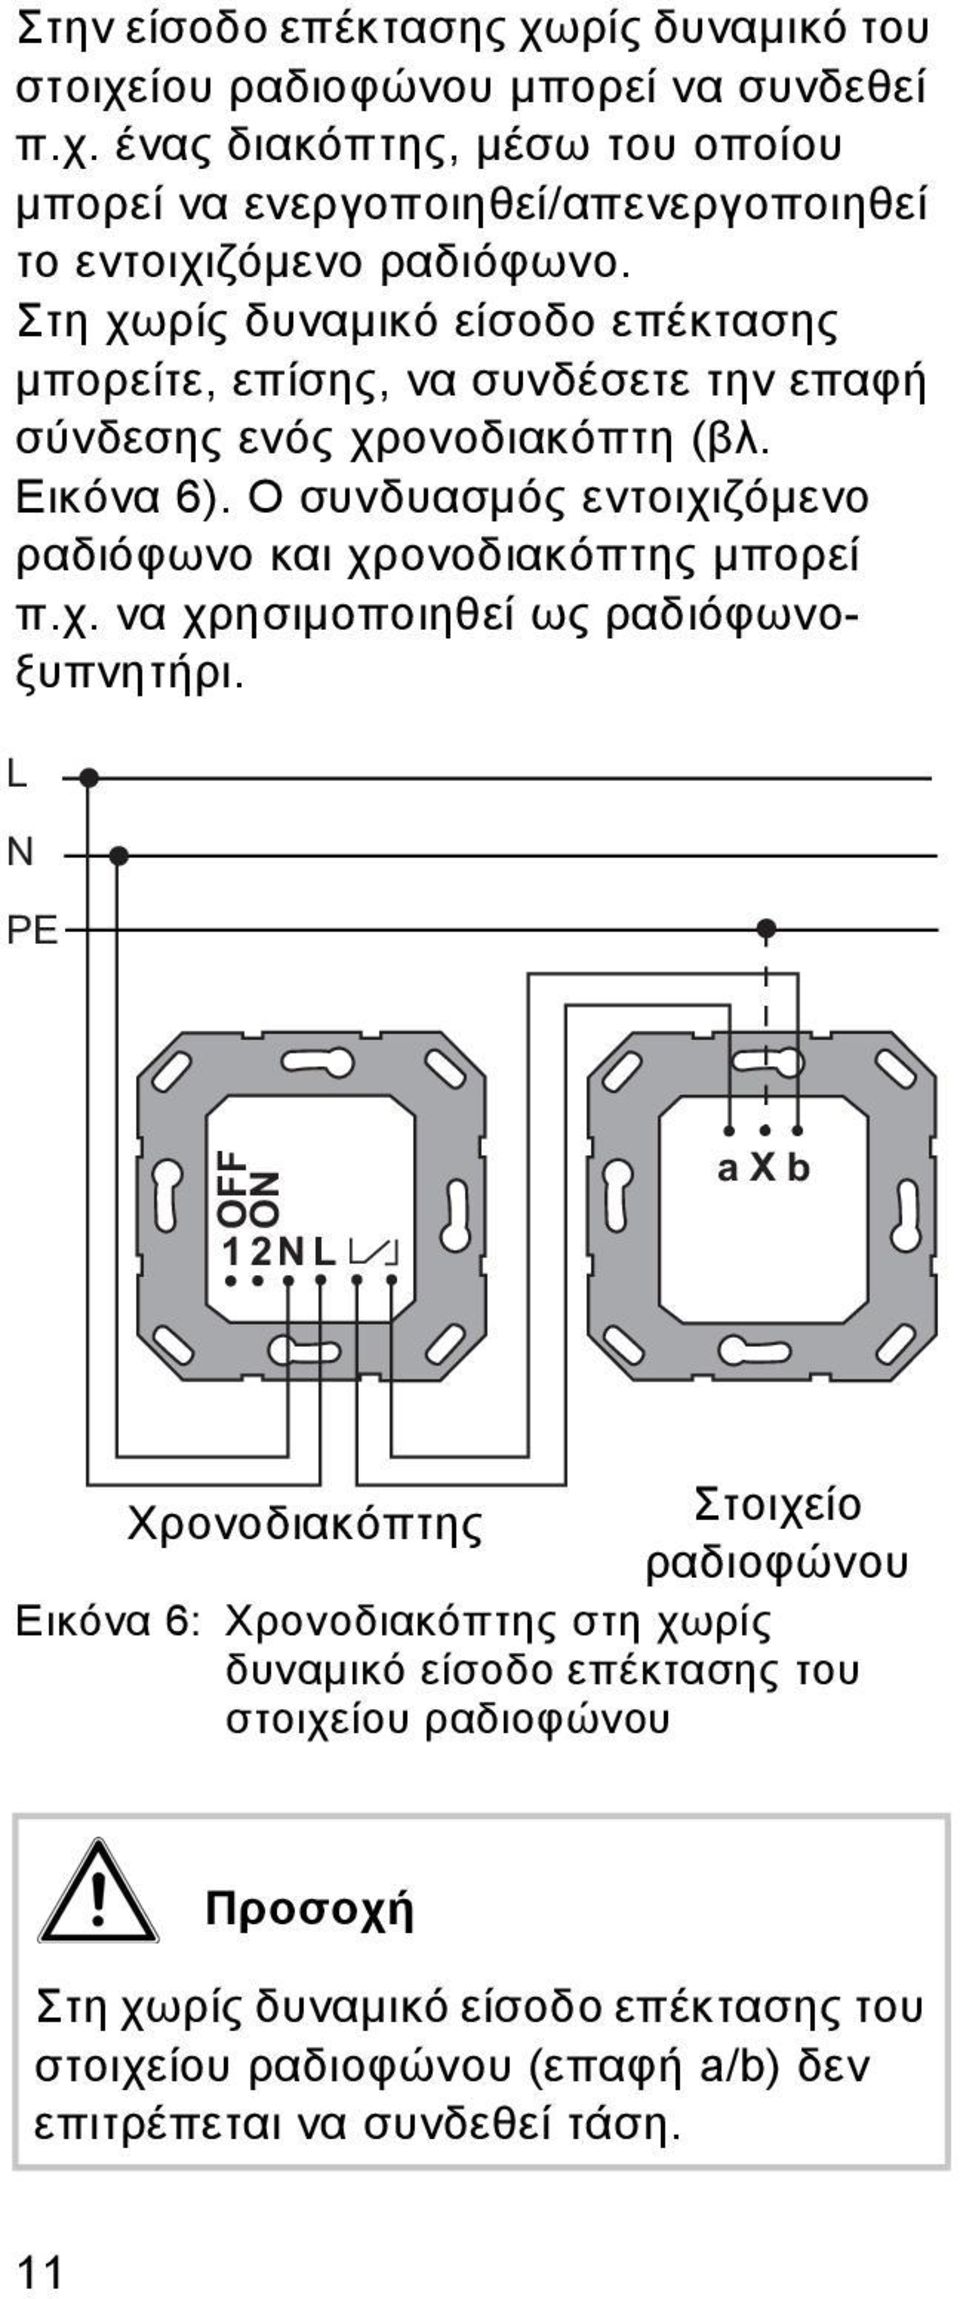 Ο συνδυασμός εντοιχιζόμενο ραδιόφωνο και χρονοδιακόπτης μπορεί π.χ. να χρησιμοποιηθεί ως ραδιόφωνοξυπνητήρι.